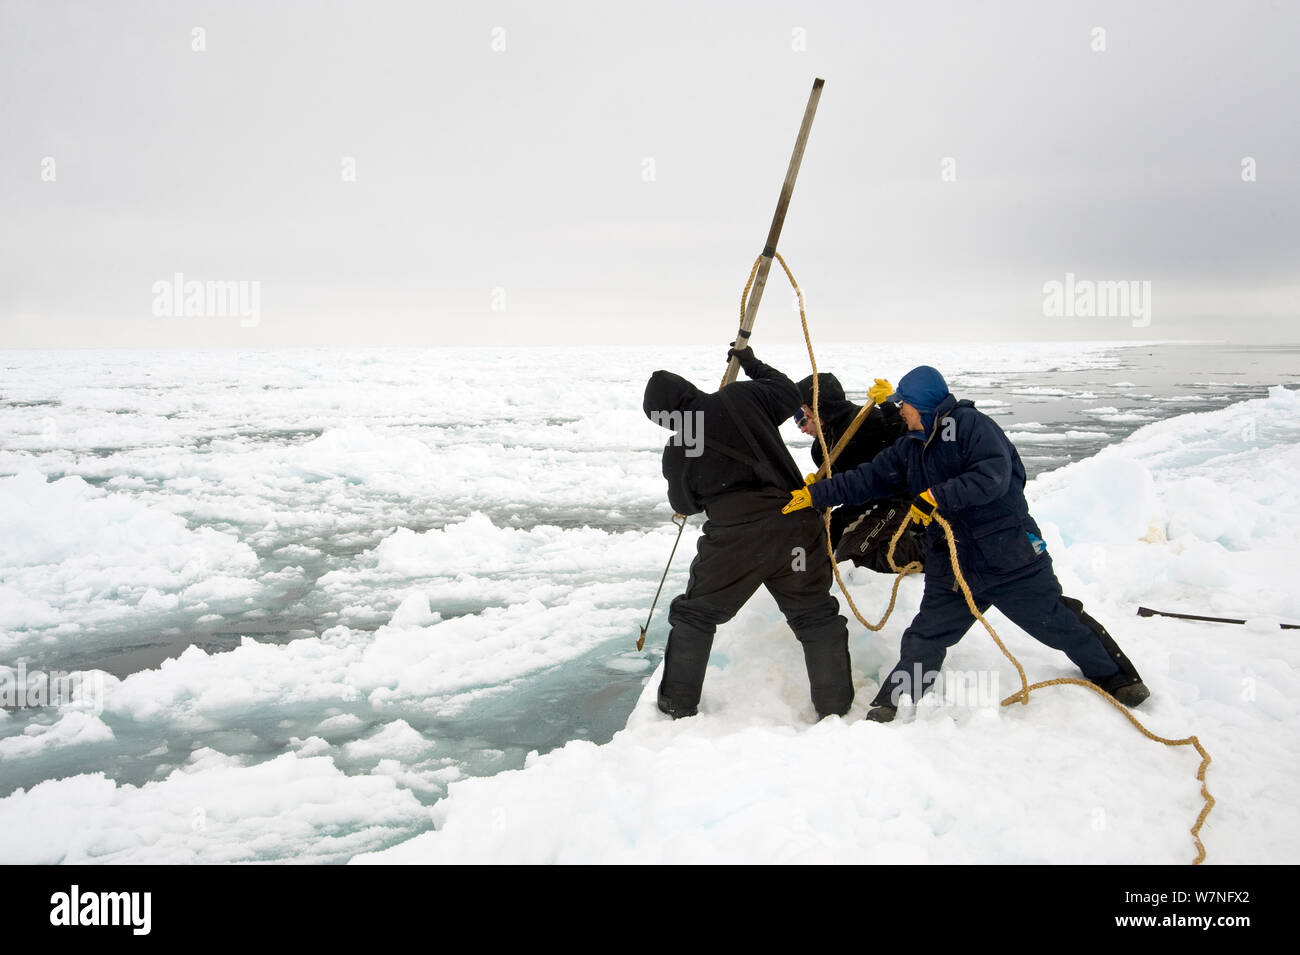 Inupiaq Aufenthaltskosten Walfänger brechen Sie ein Loch in die Packung Eis mit einer Harpune am Rand eines offenen führen, während der Frühling Walfang Saison, Chukchi Sea, offshore von Barrow, arktischen Küste von Alaska Stockfoto